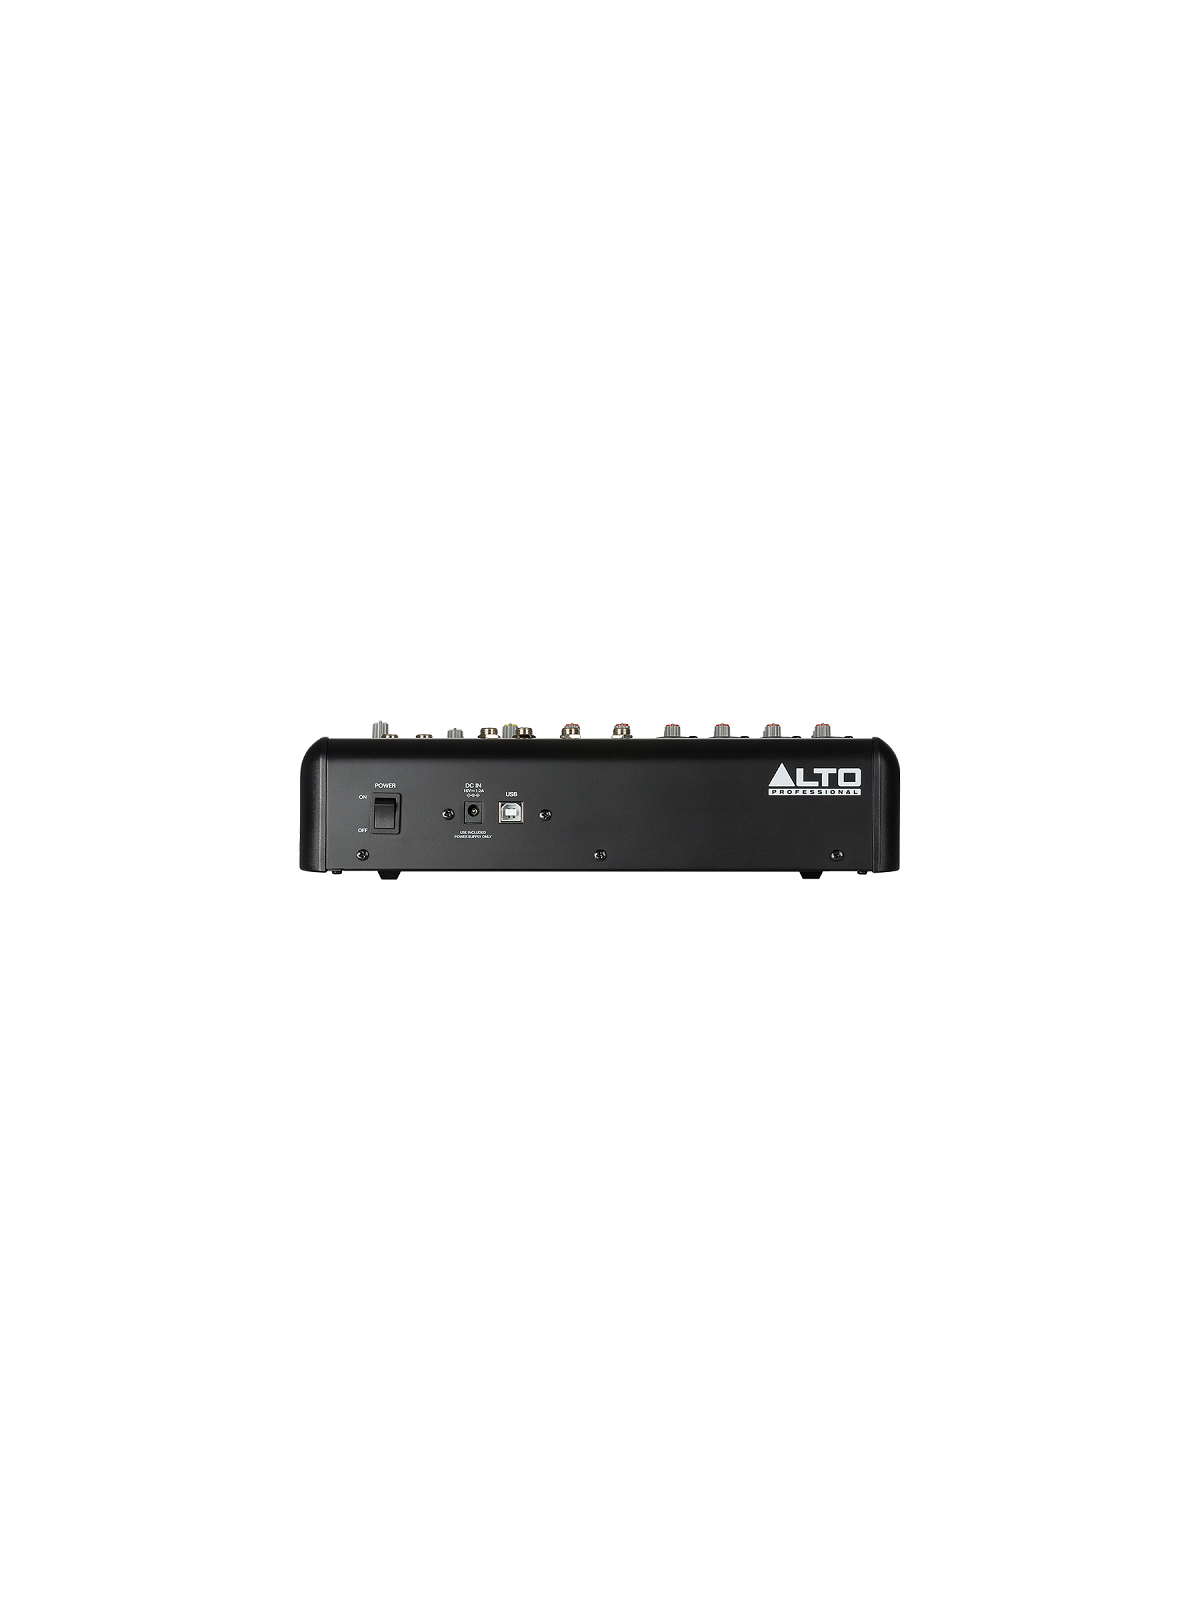 ALTO - TRUEMIX800F 8 canaux, USB